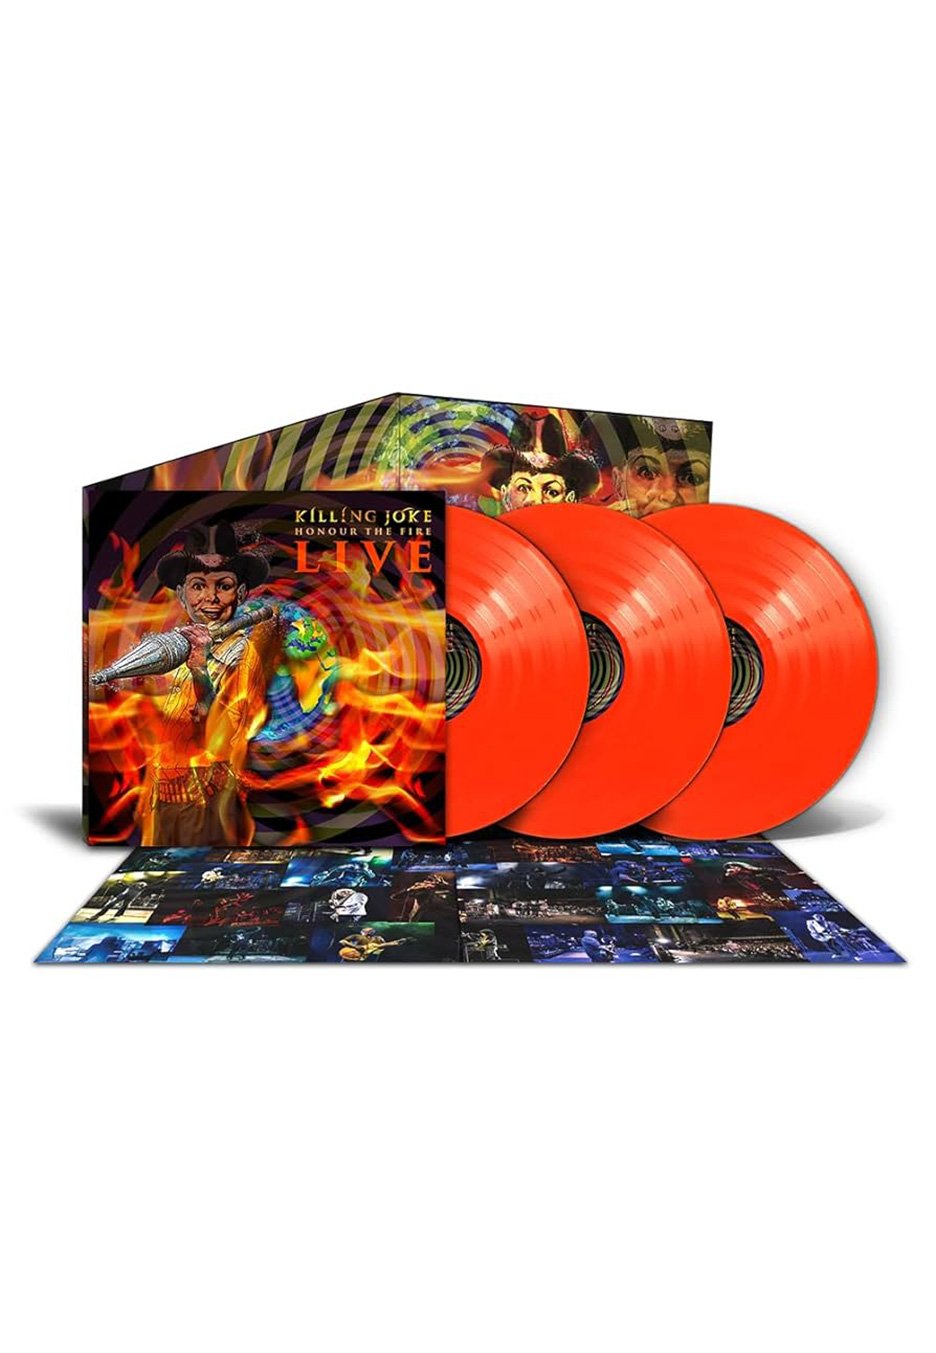 Killing Joke - Honour The Fire Live Ltd. Orange - Colored 3 Vinyl